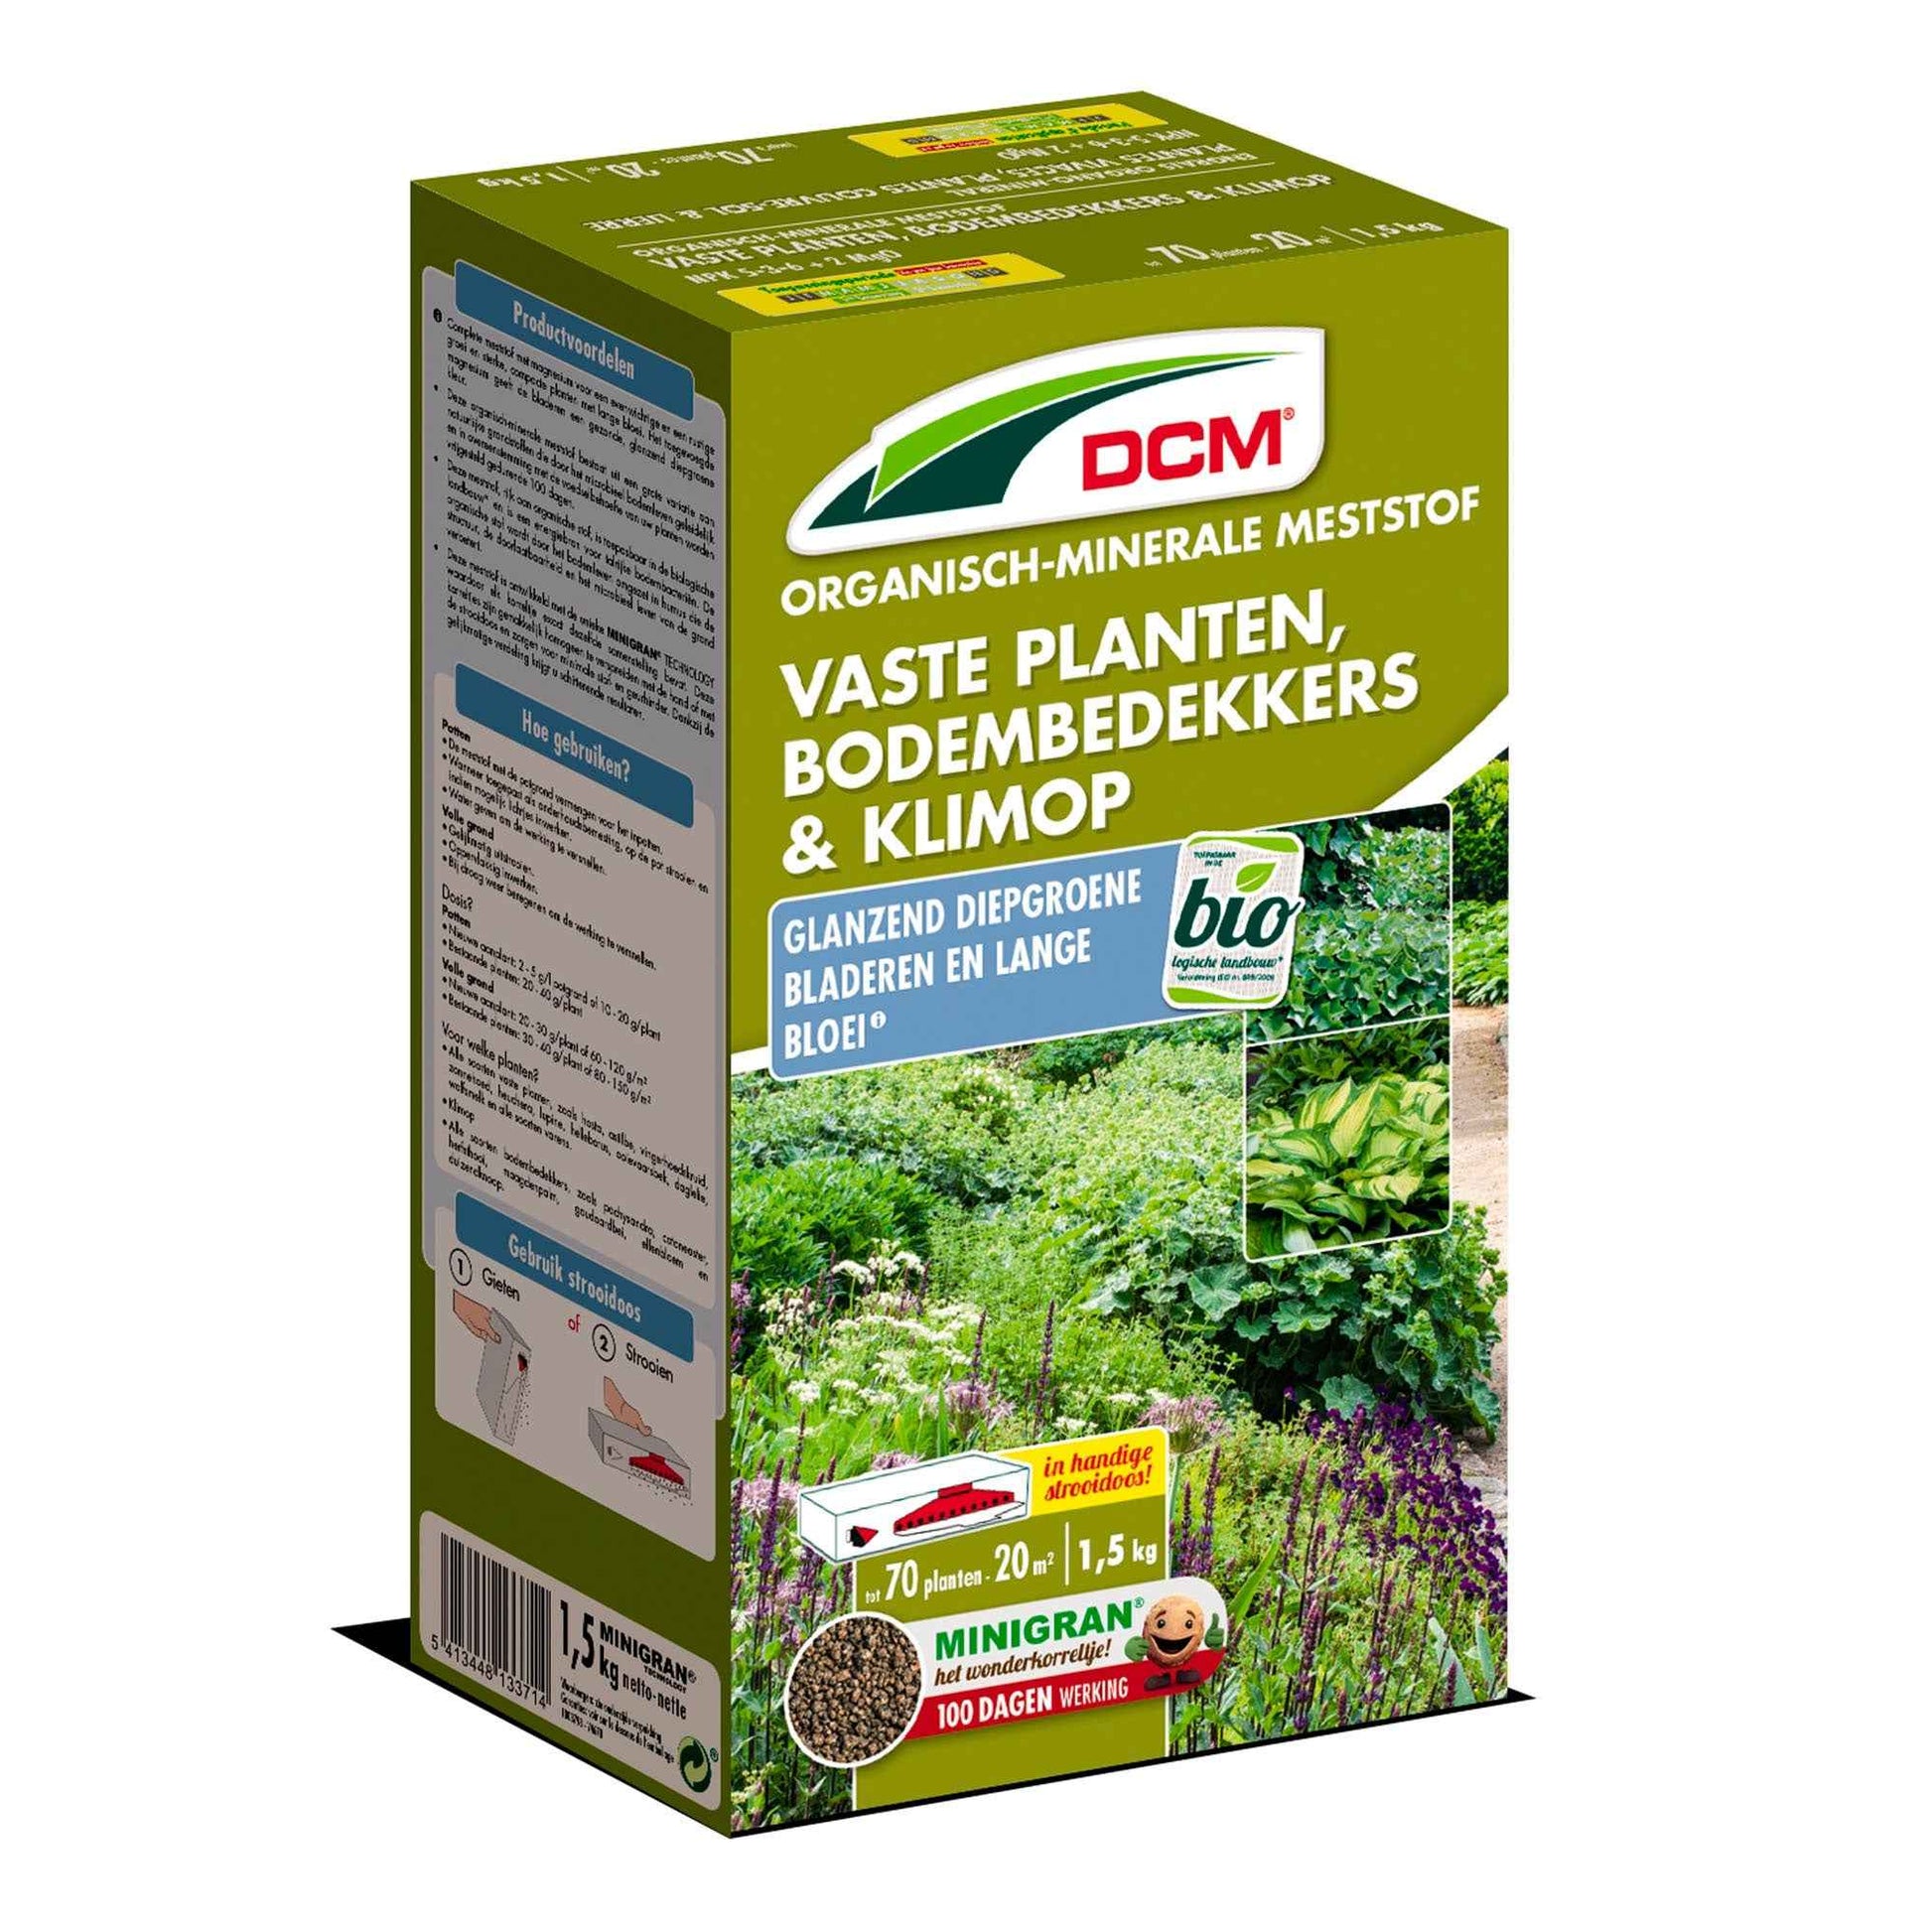 Plantenvoeding voor vaste planten, bodembedekkers & klimop - Biologisch 1,5 kg - DCM - Meststoffen